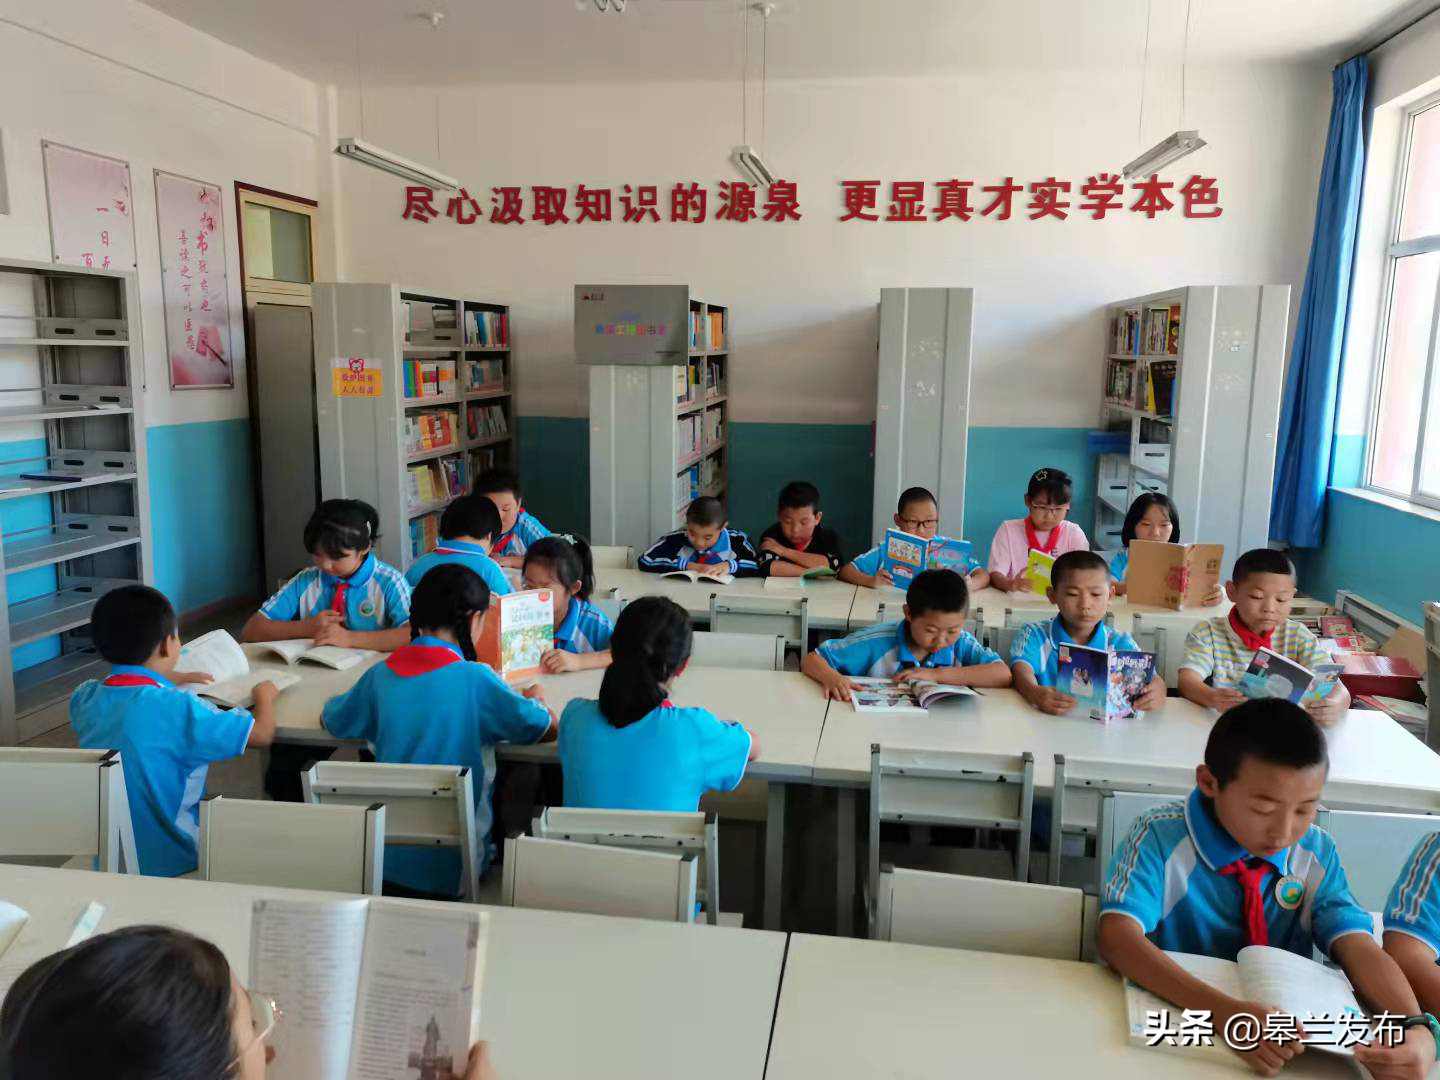 皋兰县东湾小学获中国青基会“希望工程图书室”项目资助